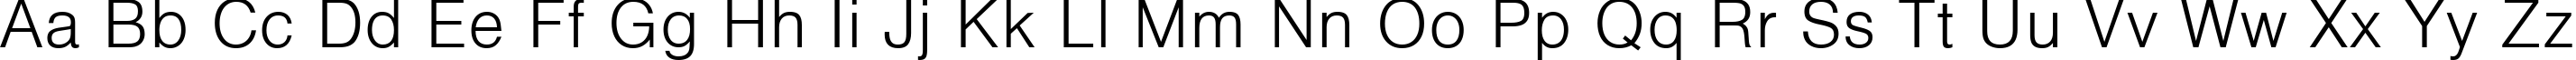 Пример написания английского алфавита шрифтом Vanta Light Plain:001.001